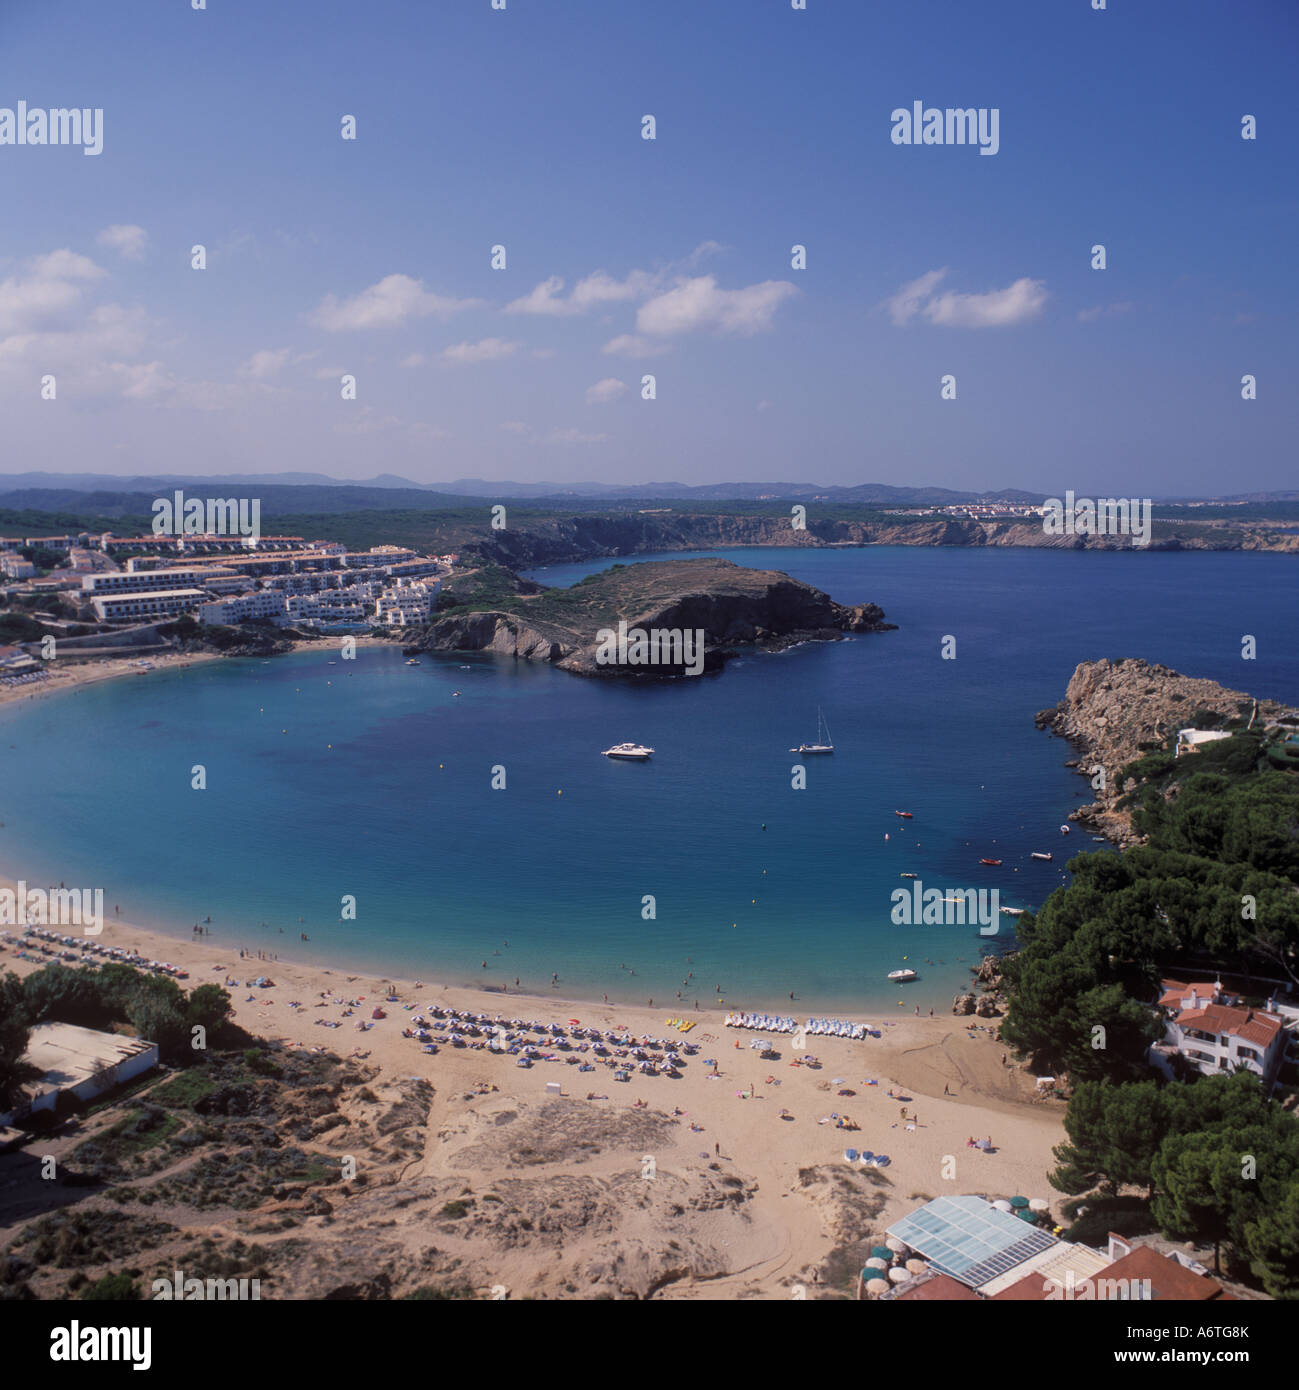 Vista aérea - playa Bahía + + + urbanización cabecero mirando al norte oeste - Arenal d'en Castell, costa norte de Menorca / Menorca Foto de stock